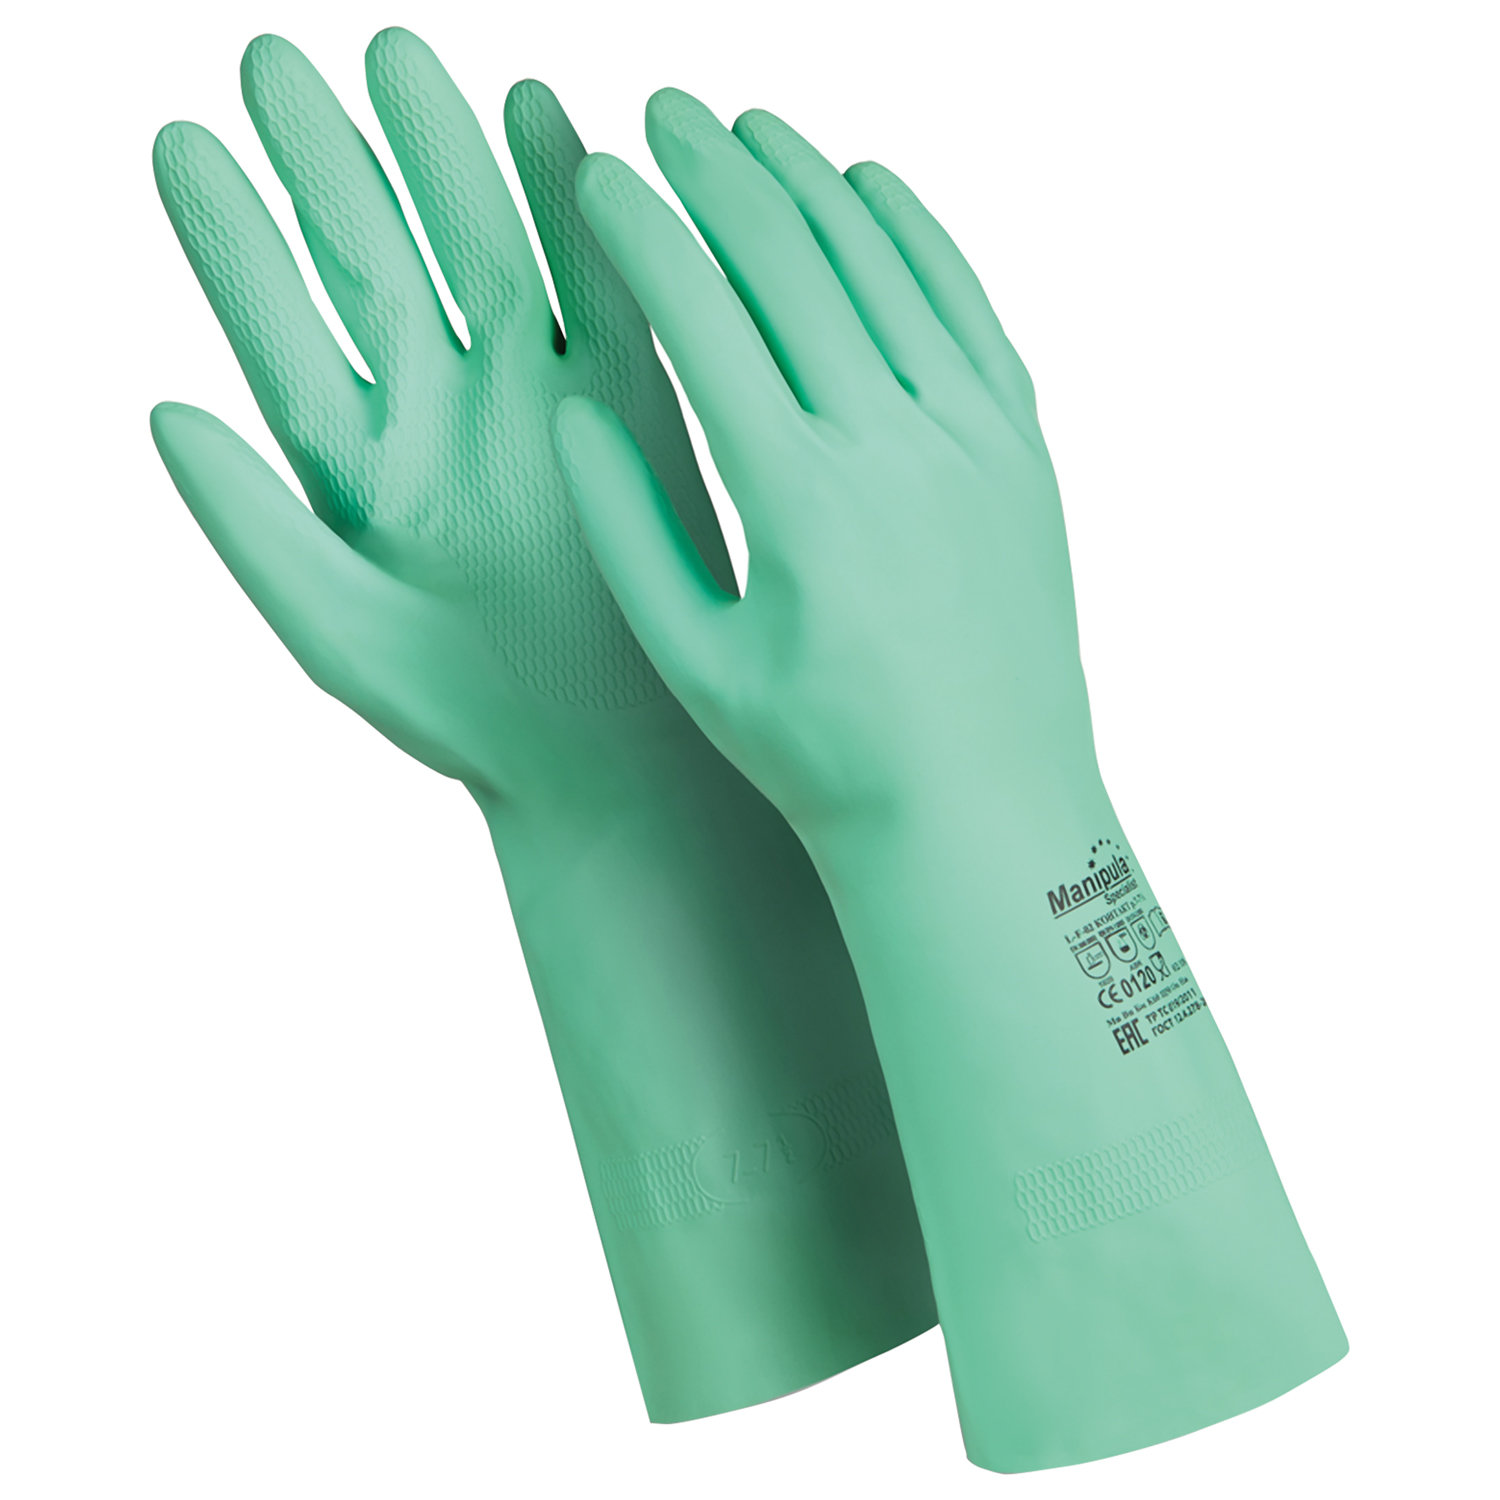 Перчатки латексные с хб напылением Manipula, размер XL, 6 пар перчатки manipula specialist юнит 300 tns 53 р 8 пер 666 8